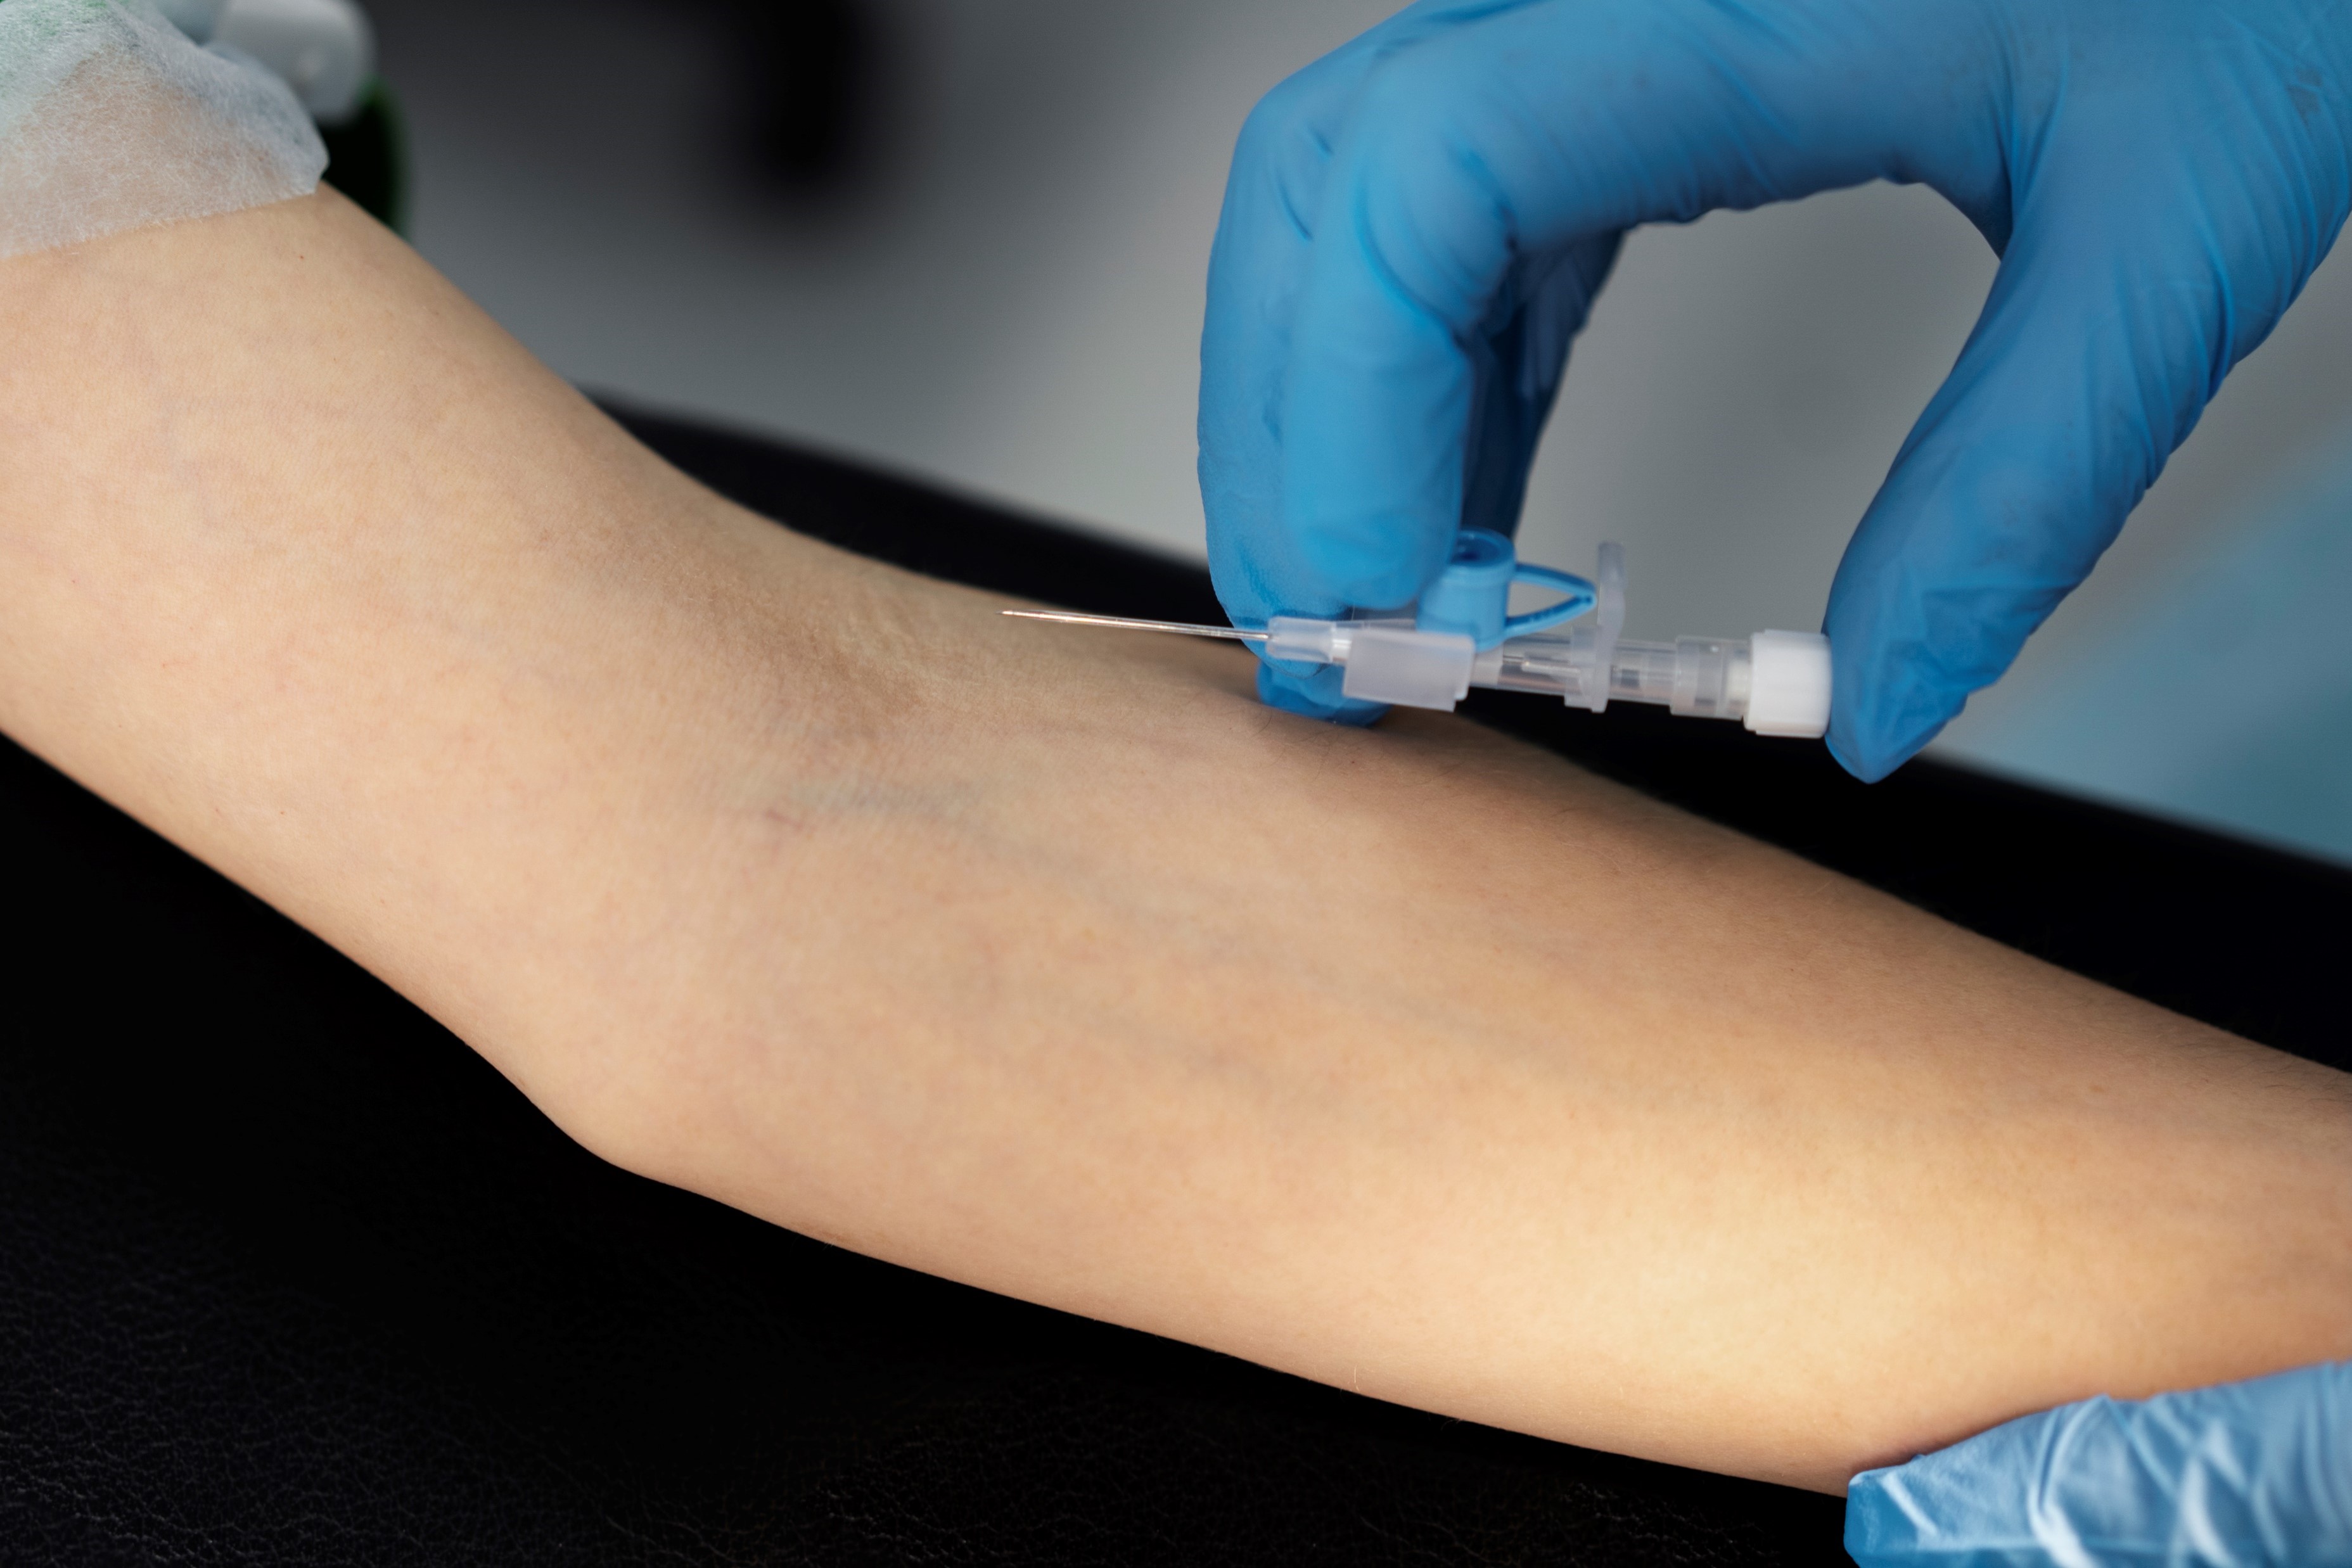 Nurse putting IV on patient's arm